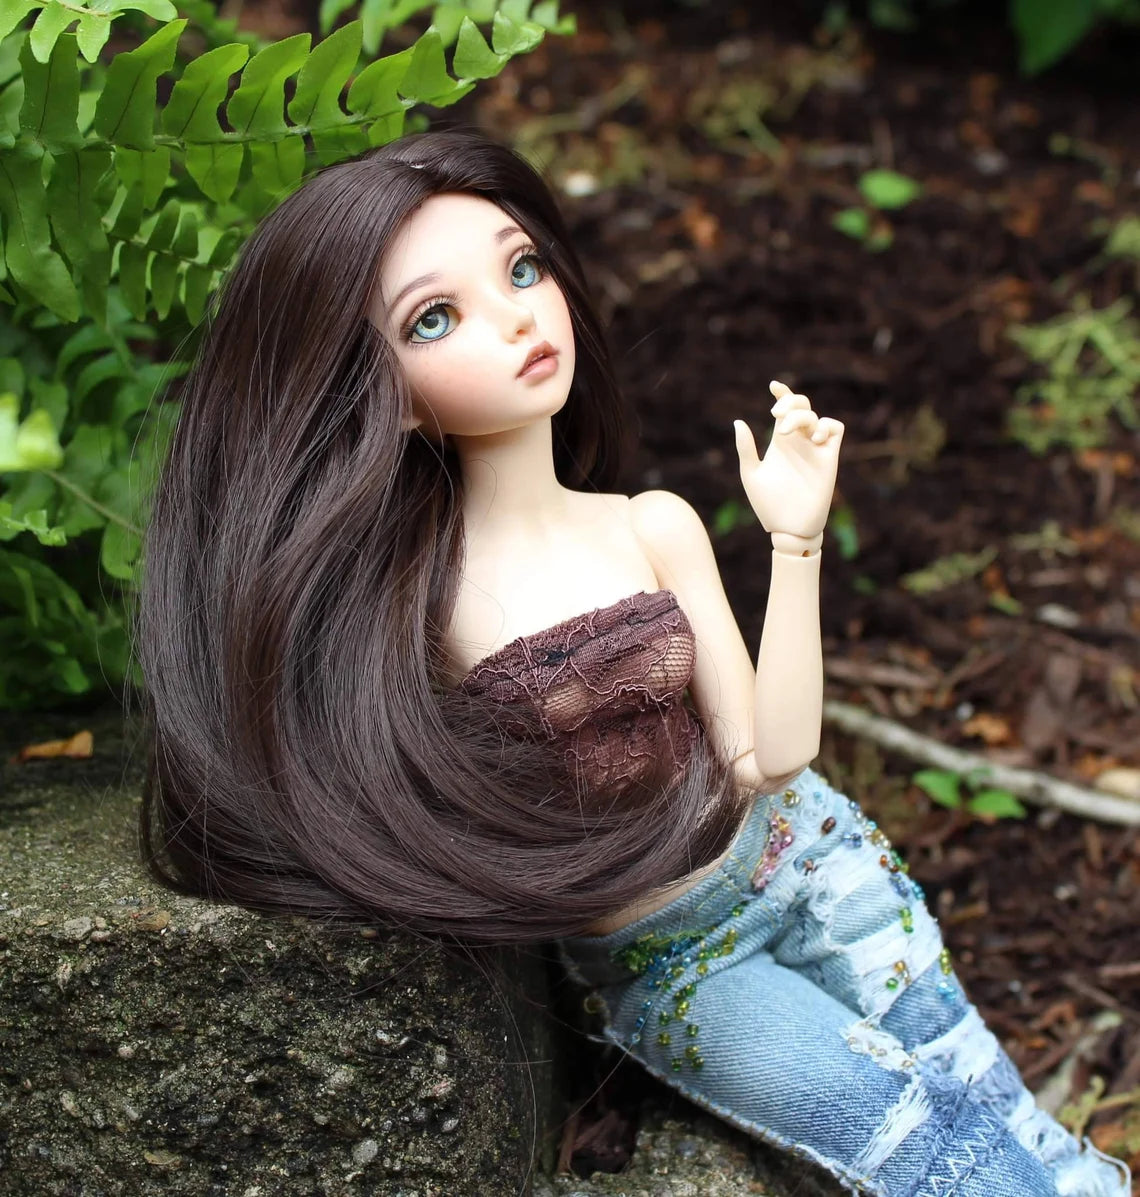 Custom doll Wig for Minifee 1/4 BJD Dolls- "TAN CAPS" 6-7" head size of Bjd, msd, Boneka ,Fairyland Minifee dolls brown natural